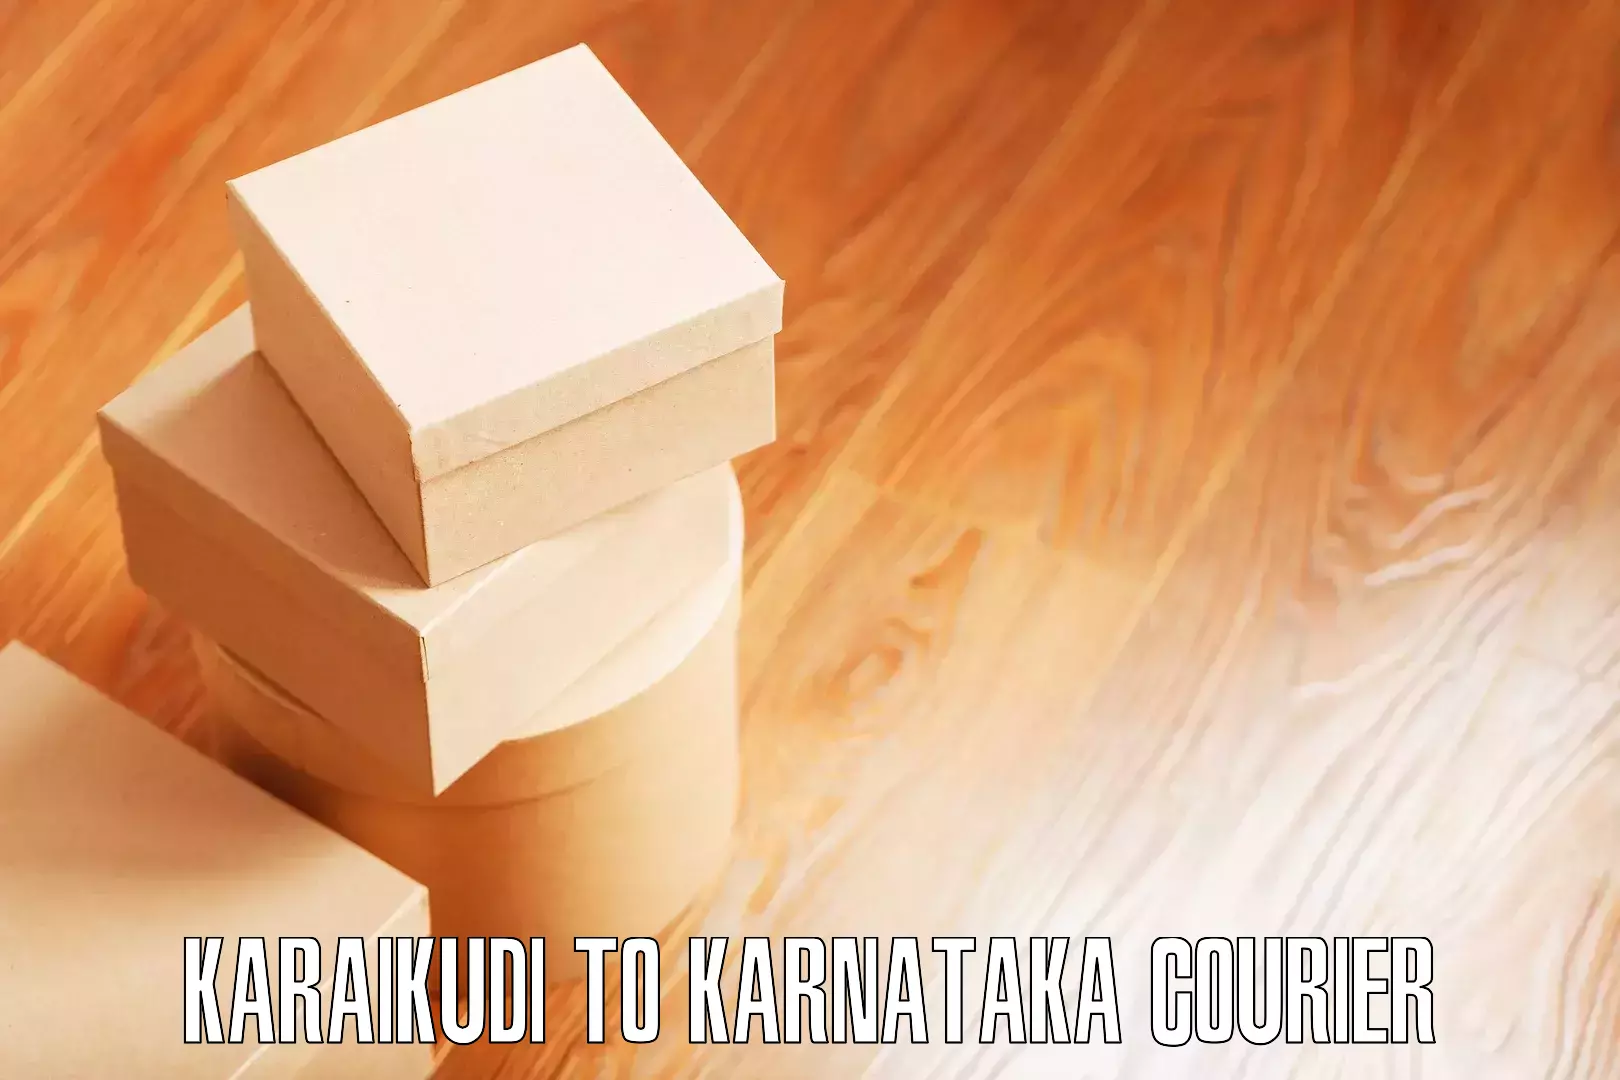 Professional furniture relocation Karaikudi to Yaragatti